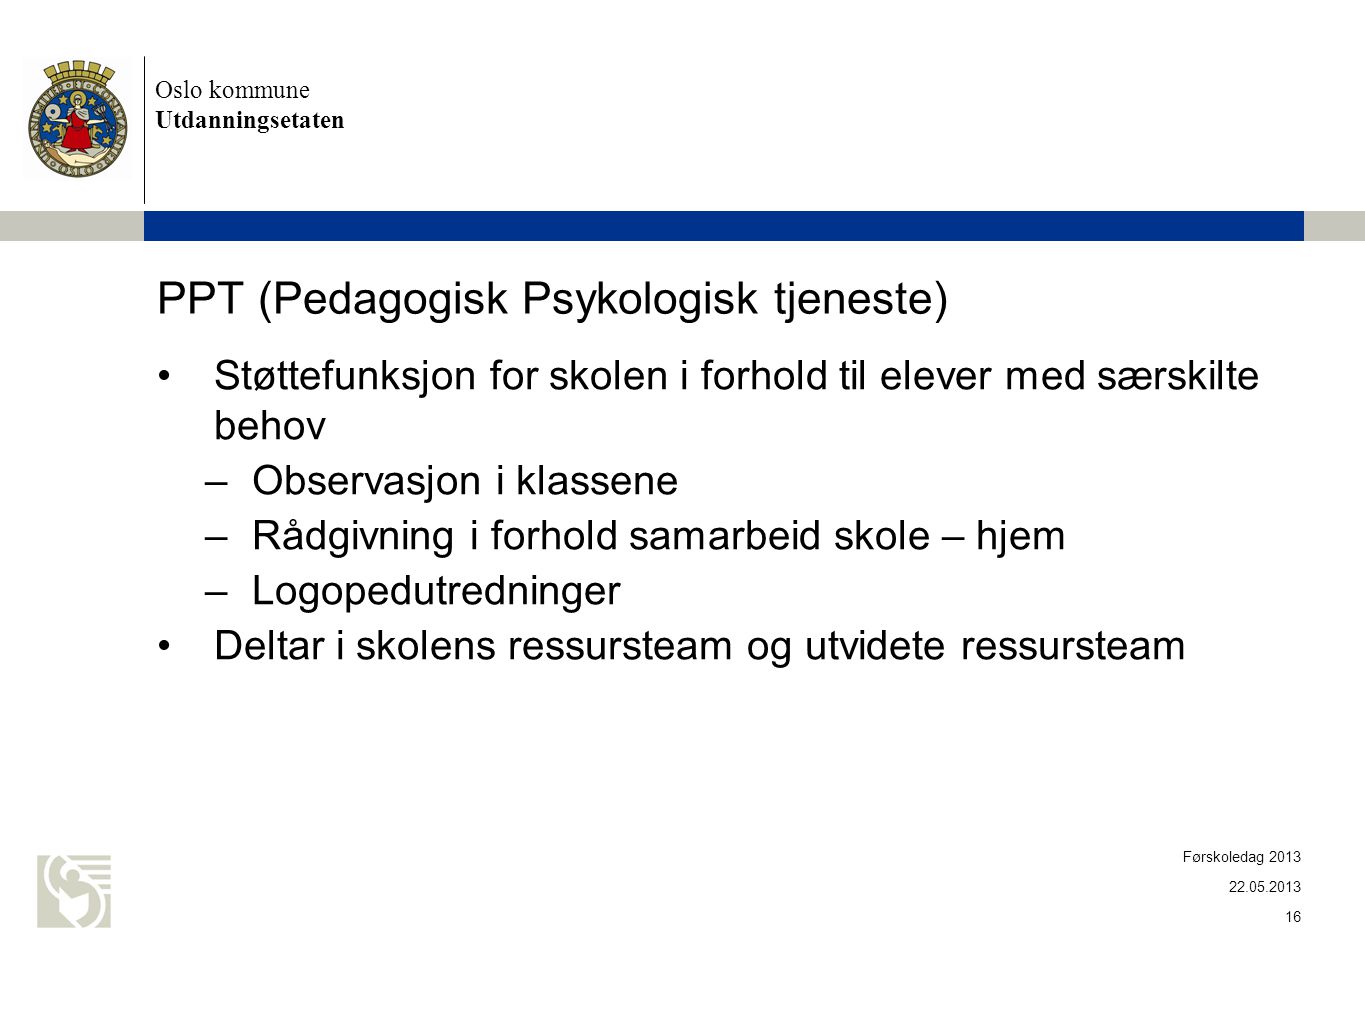 PPT (Pedagogisk Psykologisk tjeneste)